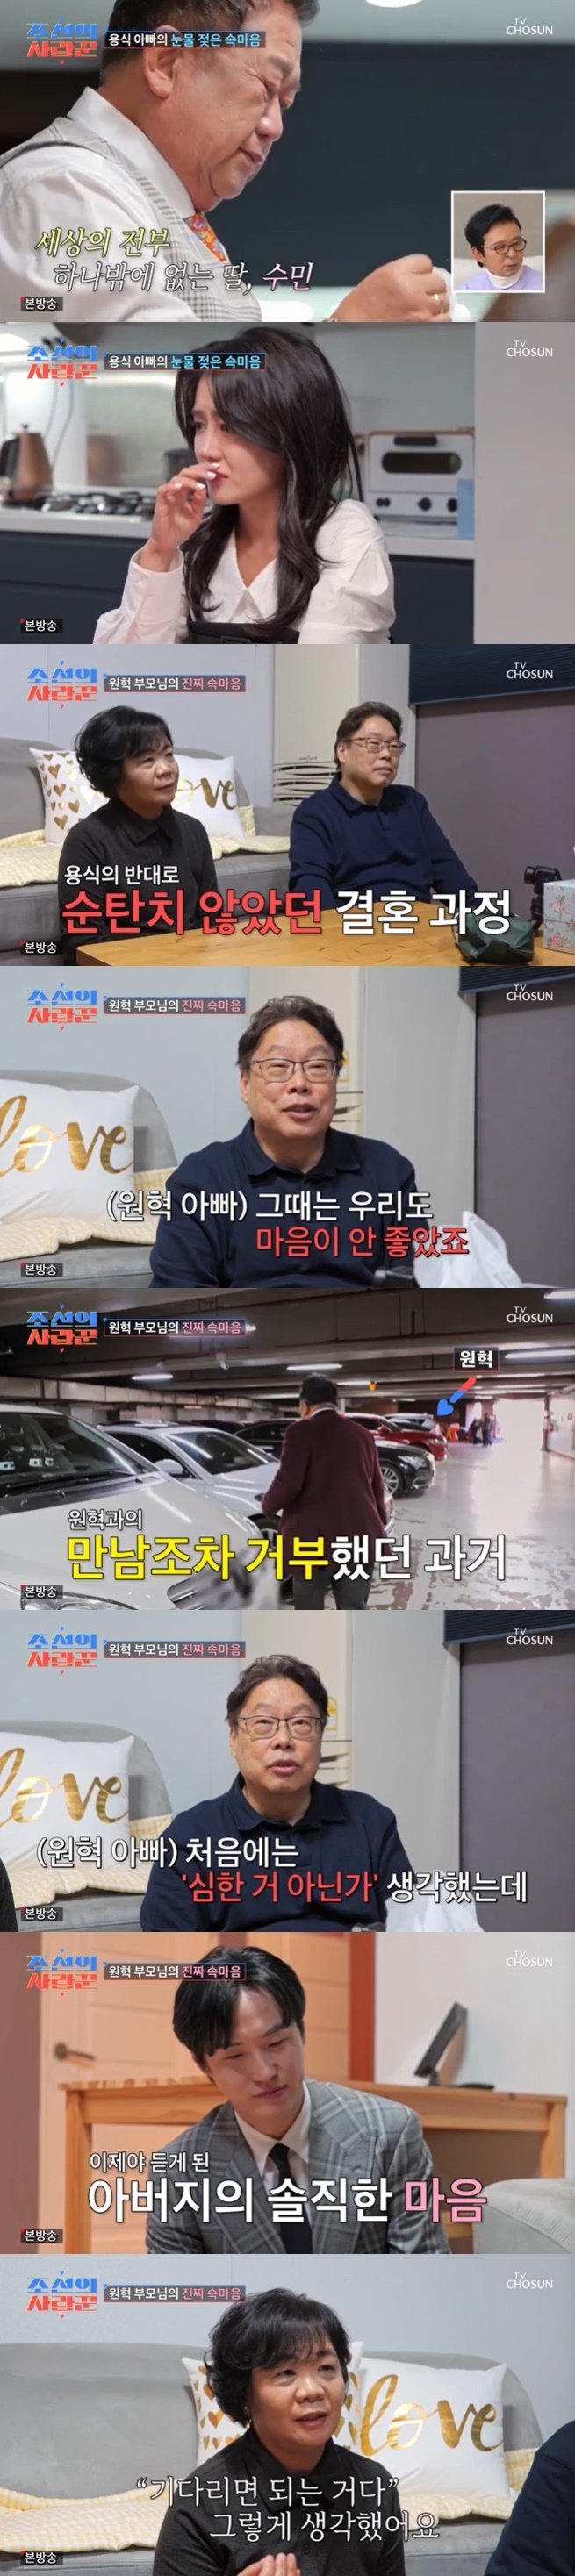 '수민♥' 원혁 부모 이용식 결혼 반대, 지인들도 걱정해 [RE:TV]